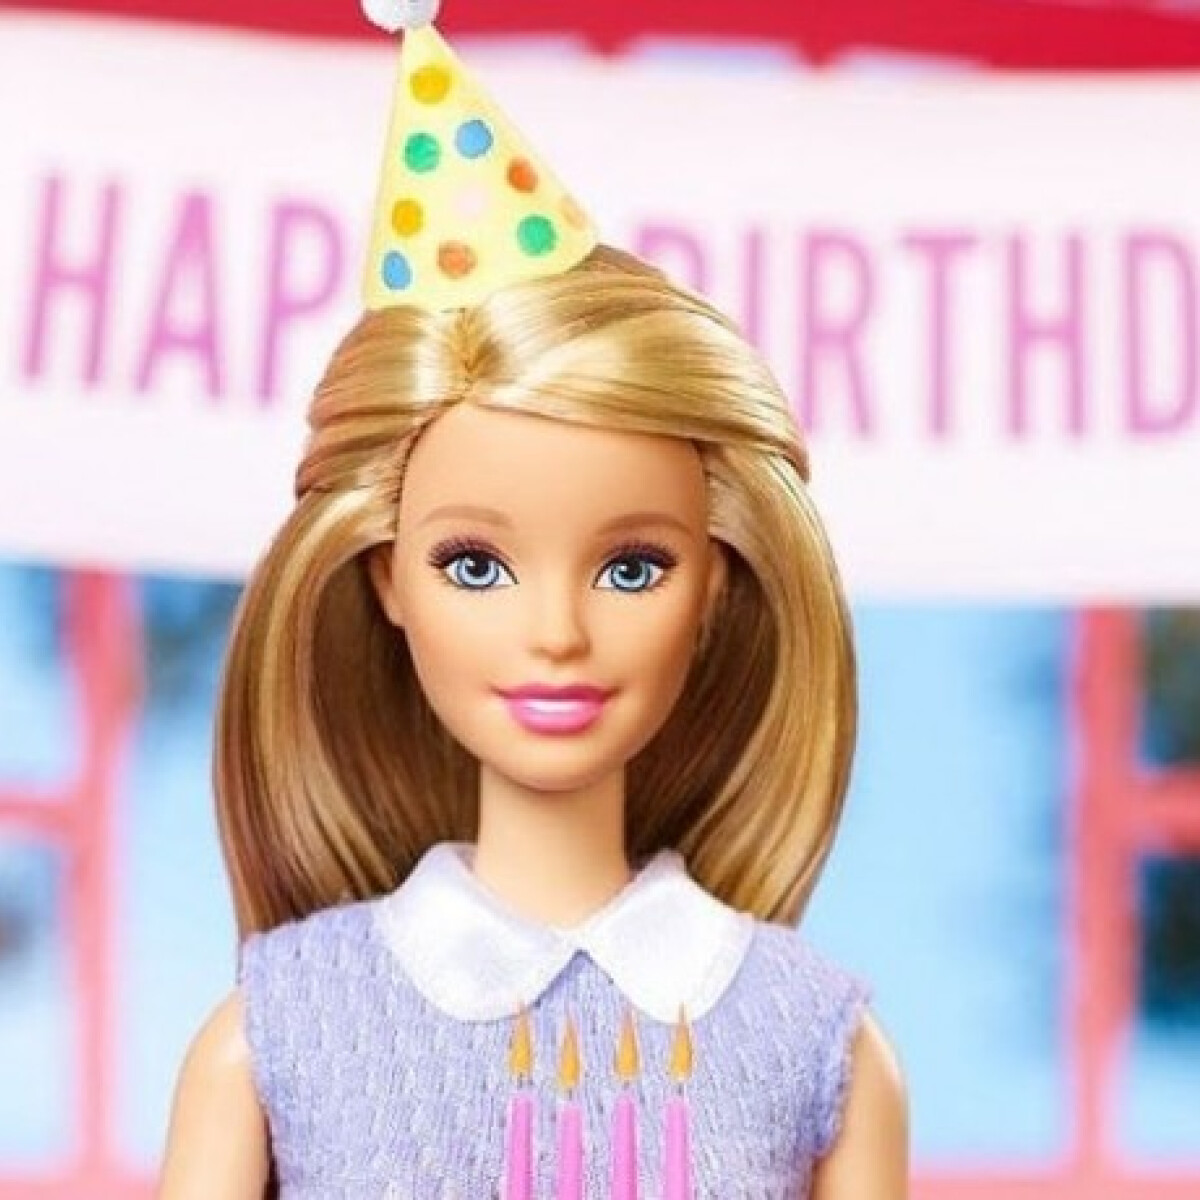 60 éves Barbie, akit imádott gyűlölni a világ, de mostantól minden más lesz